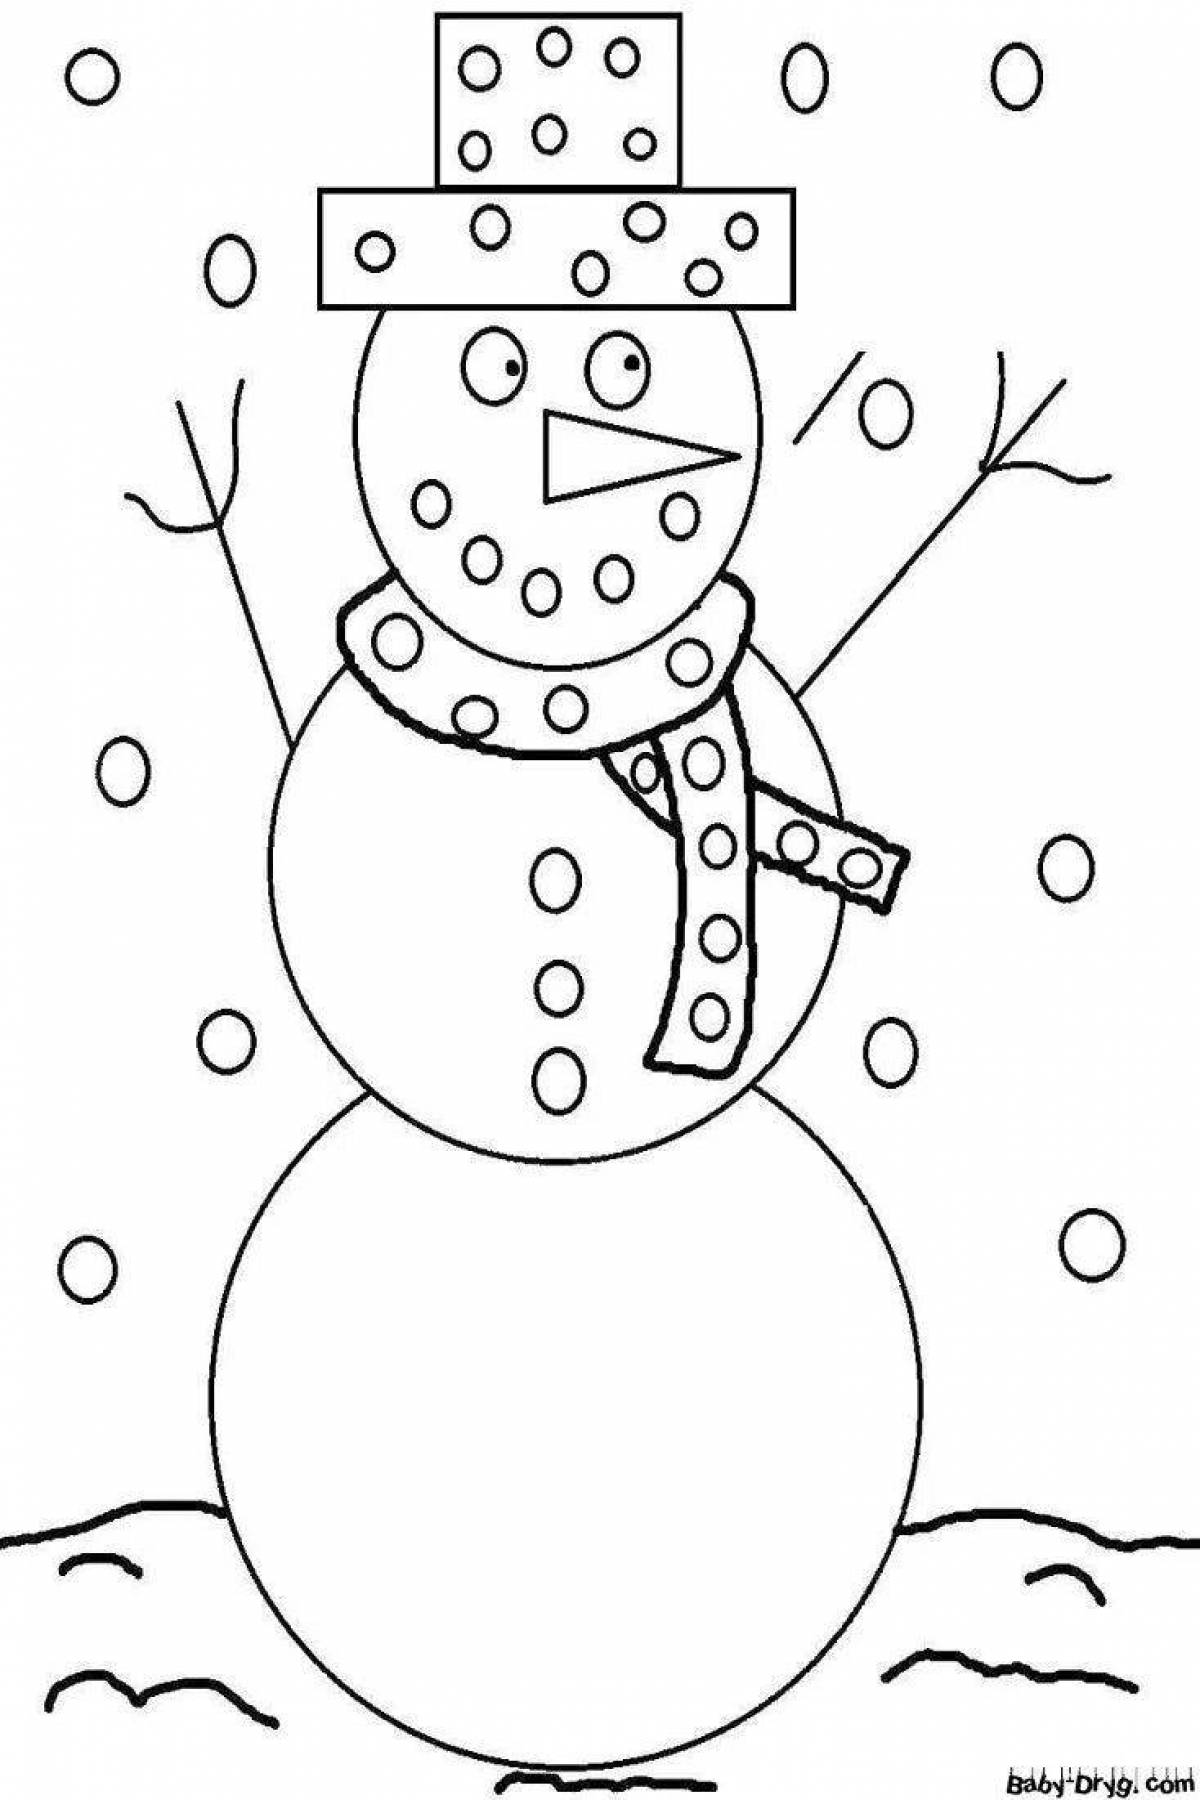 Веселая детская раскраска снеговик